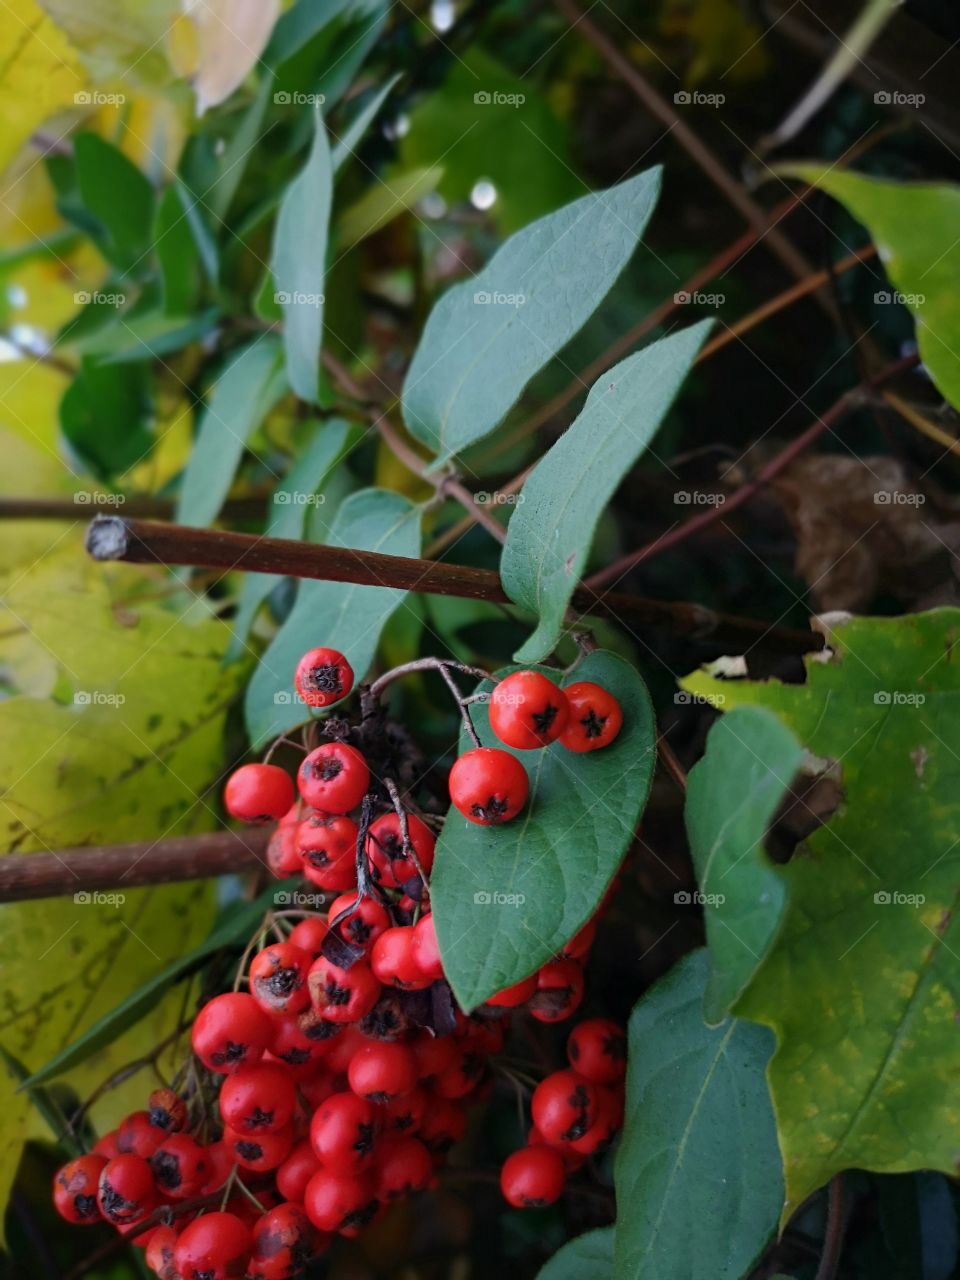 30-10-18 Daily pics berries fruit